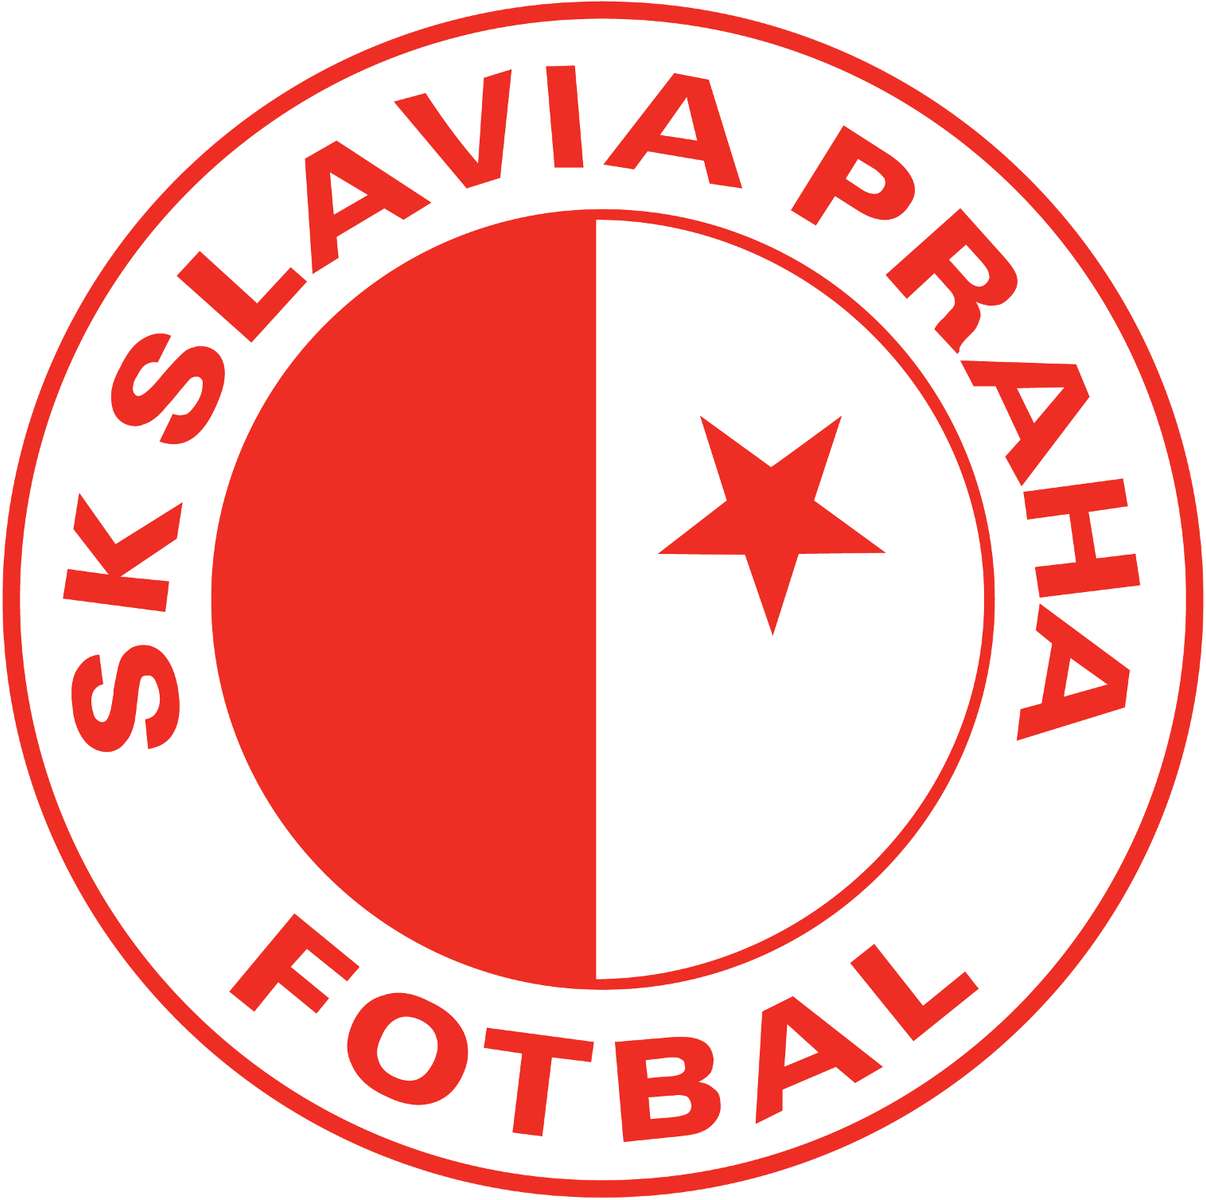 Slavia Prague puzzle en ligne